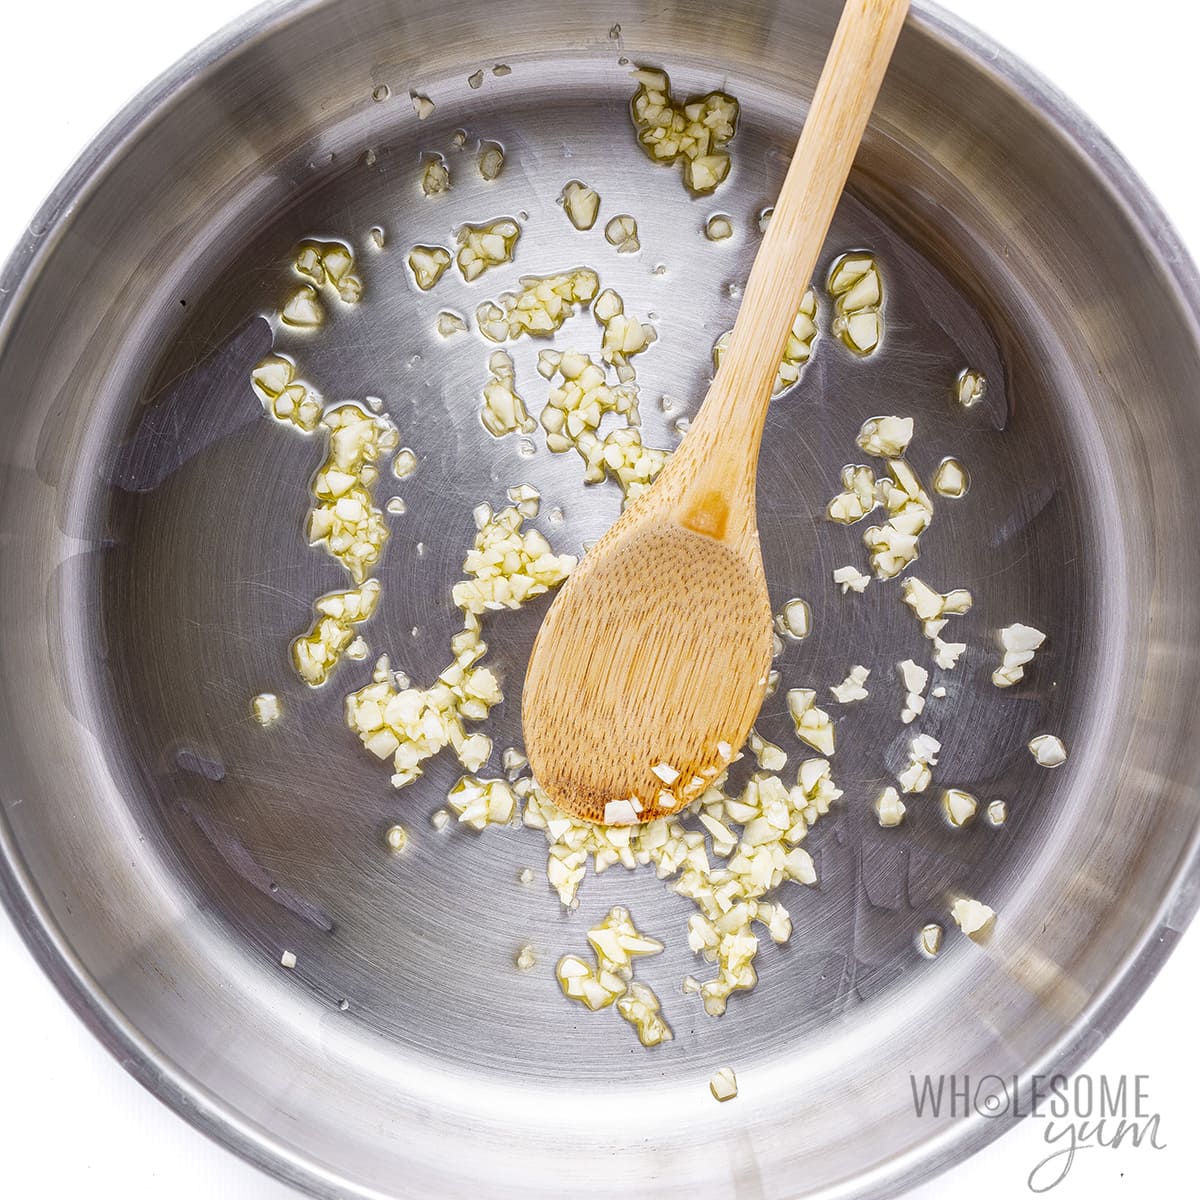 Garlic sauteed in pan.